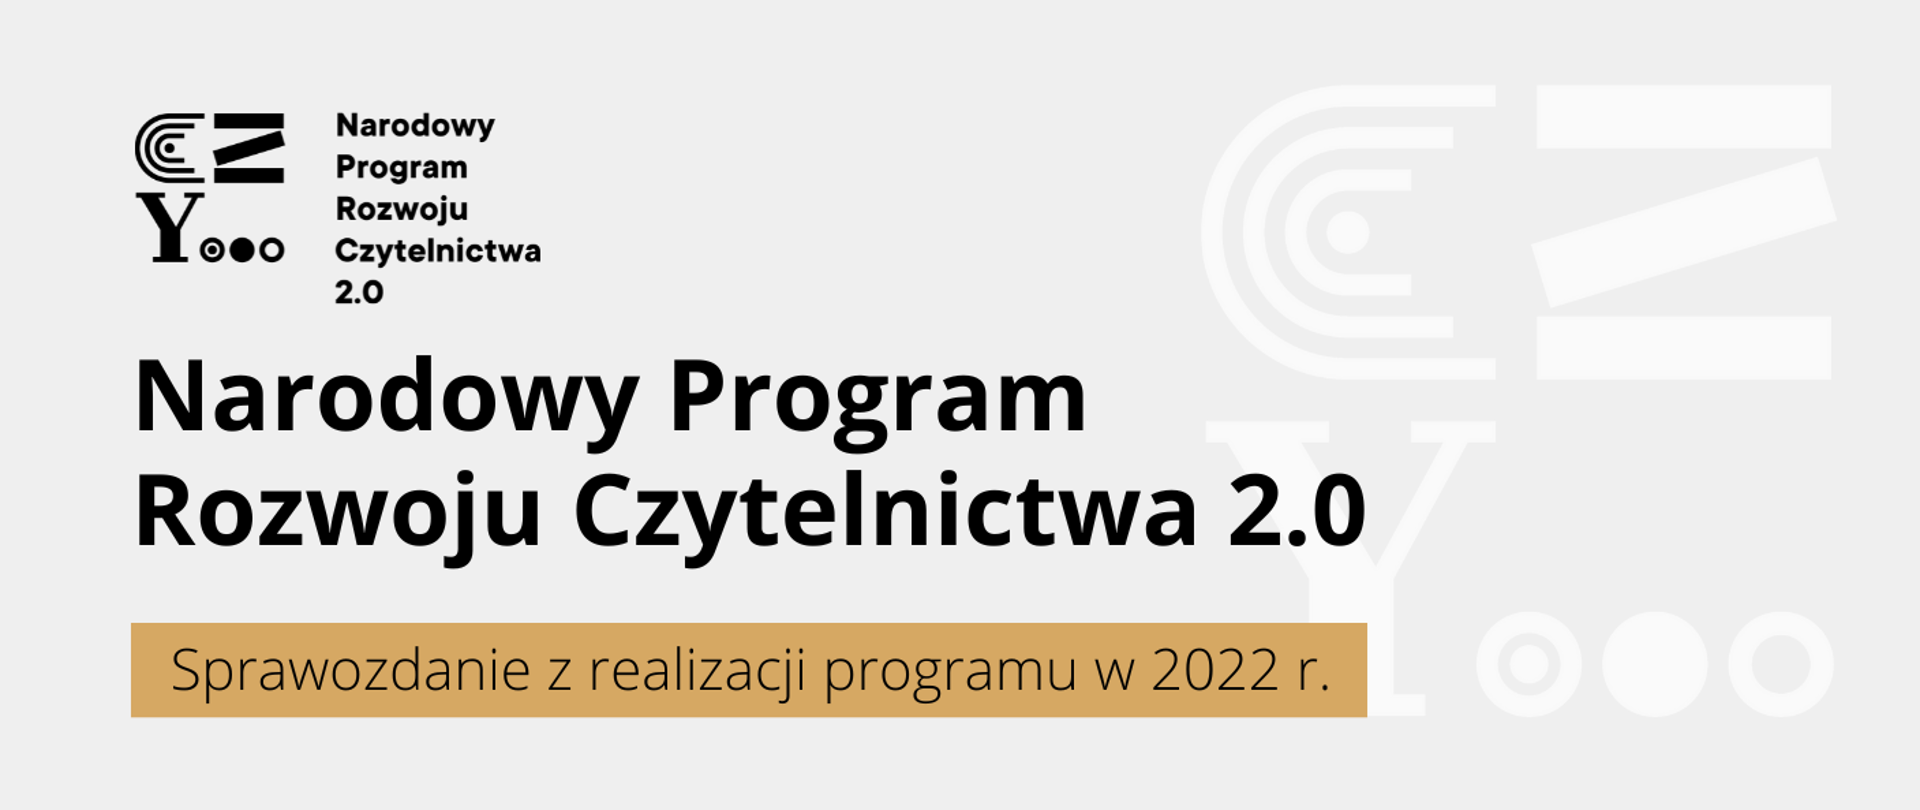 Grafika - logo NPRCz i napis Narodowy Program Rozwoju Czytelnictwa 2.0. Sprawozdanie z realizacji za 2022 r.